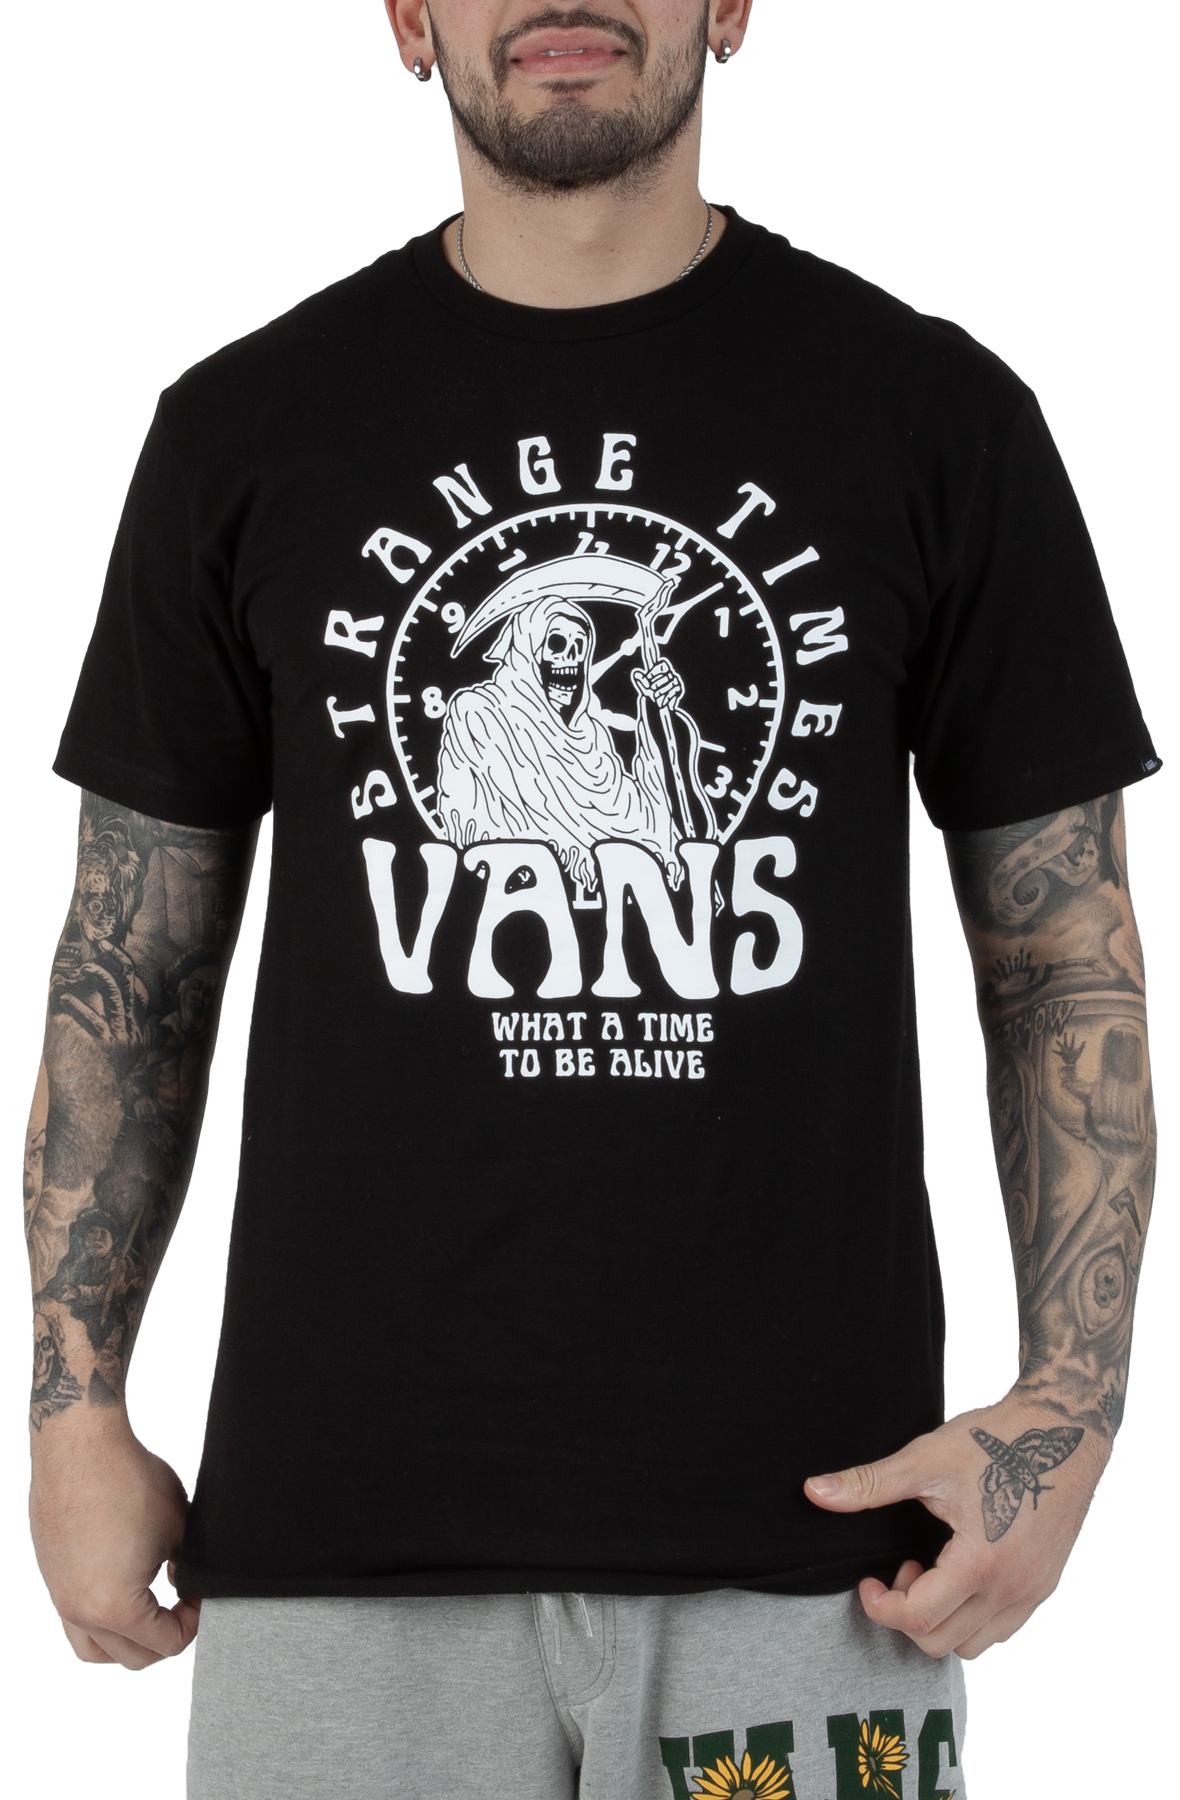 VANS Strange Time Short Sleeve T-Shirt VN000040BLK - Karmaloop